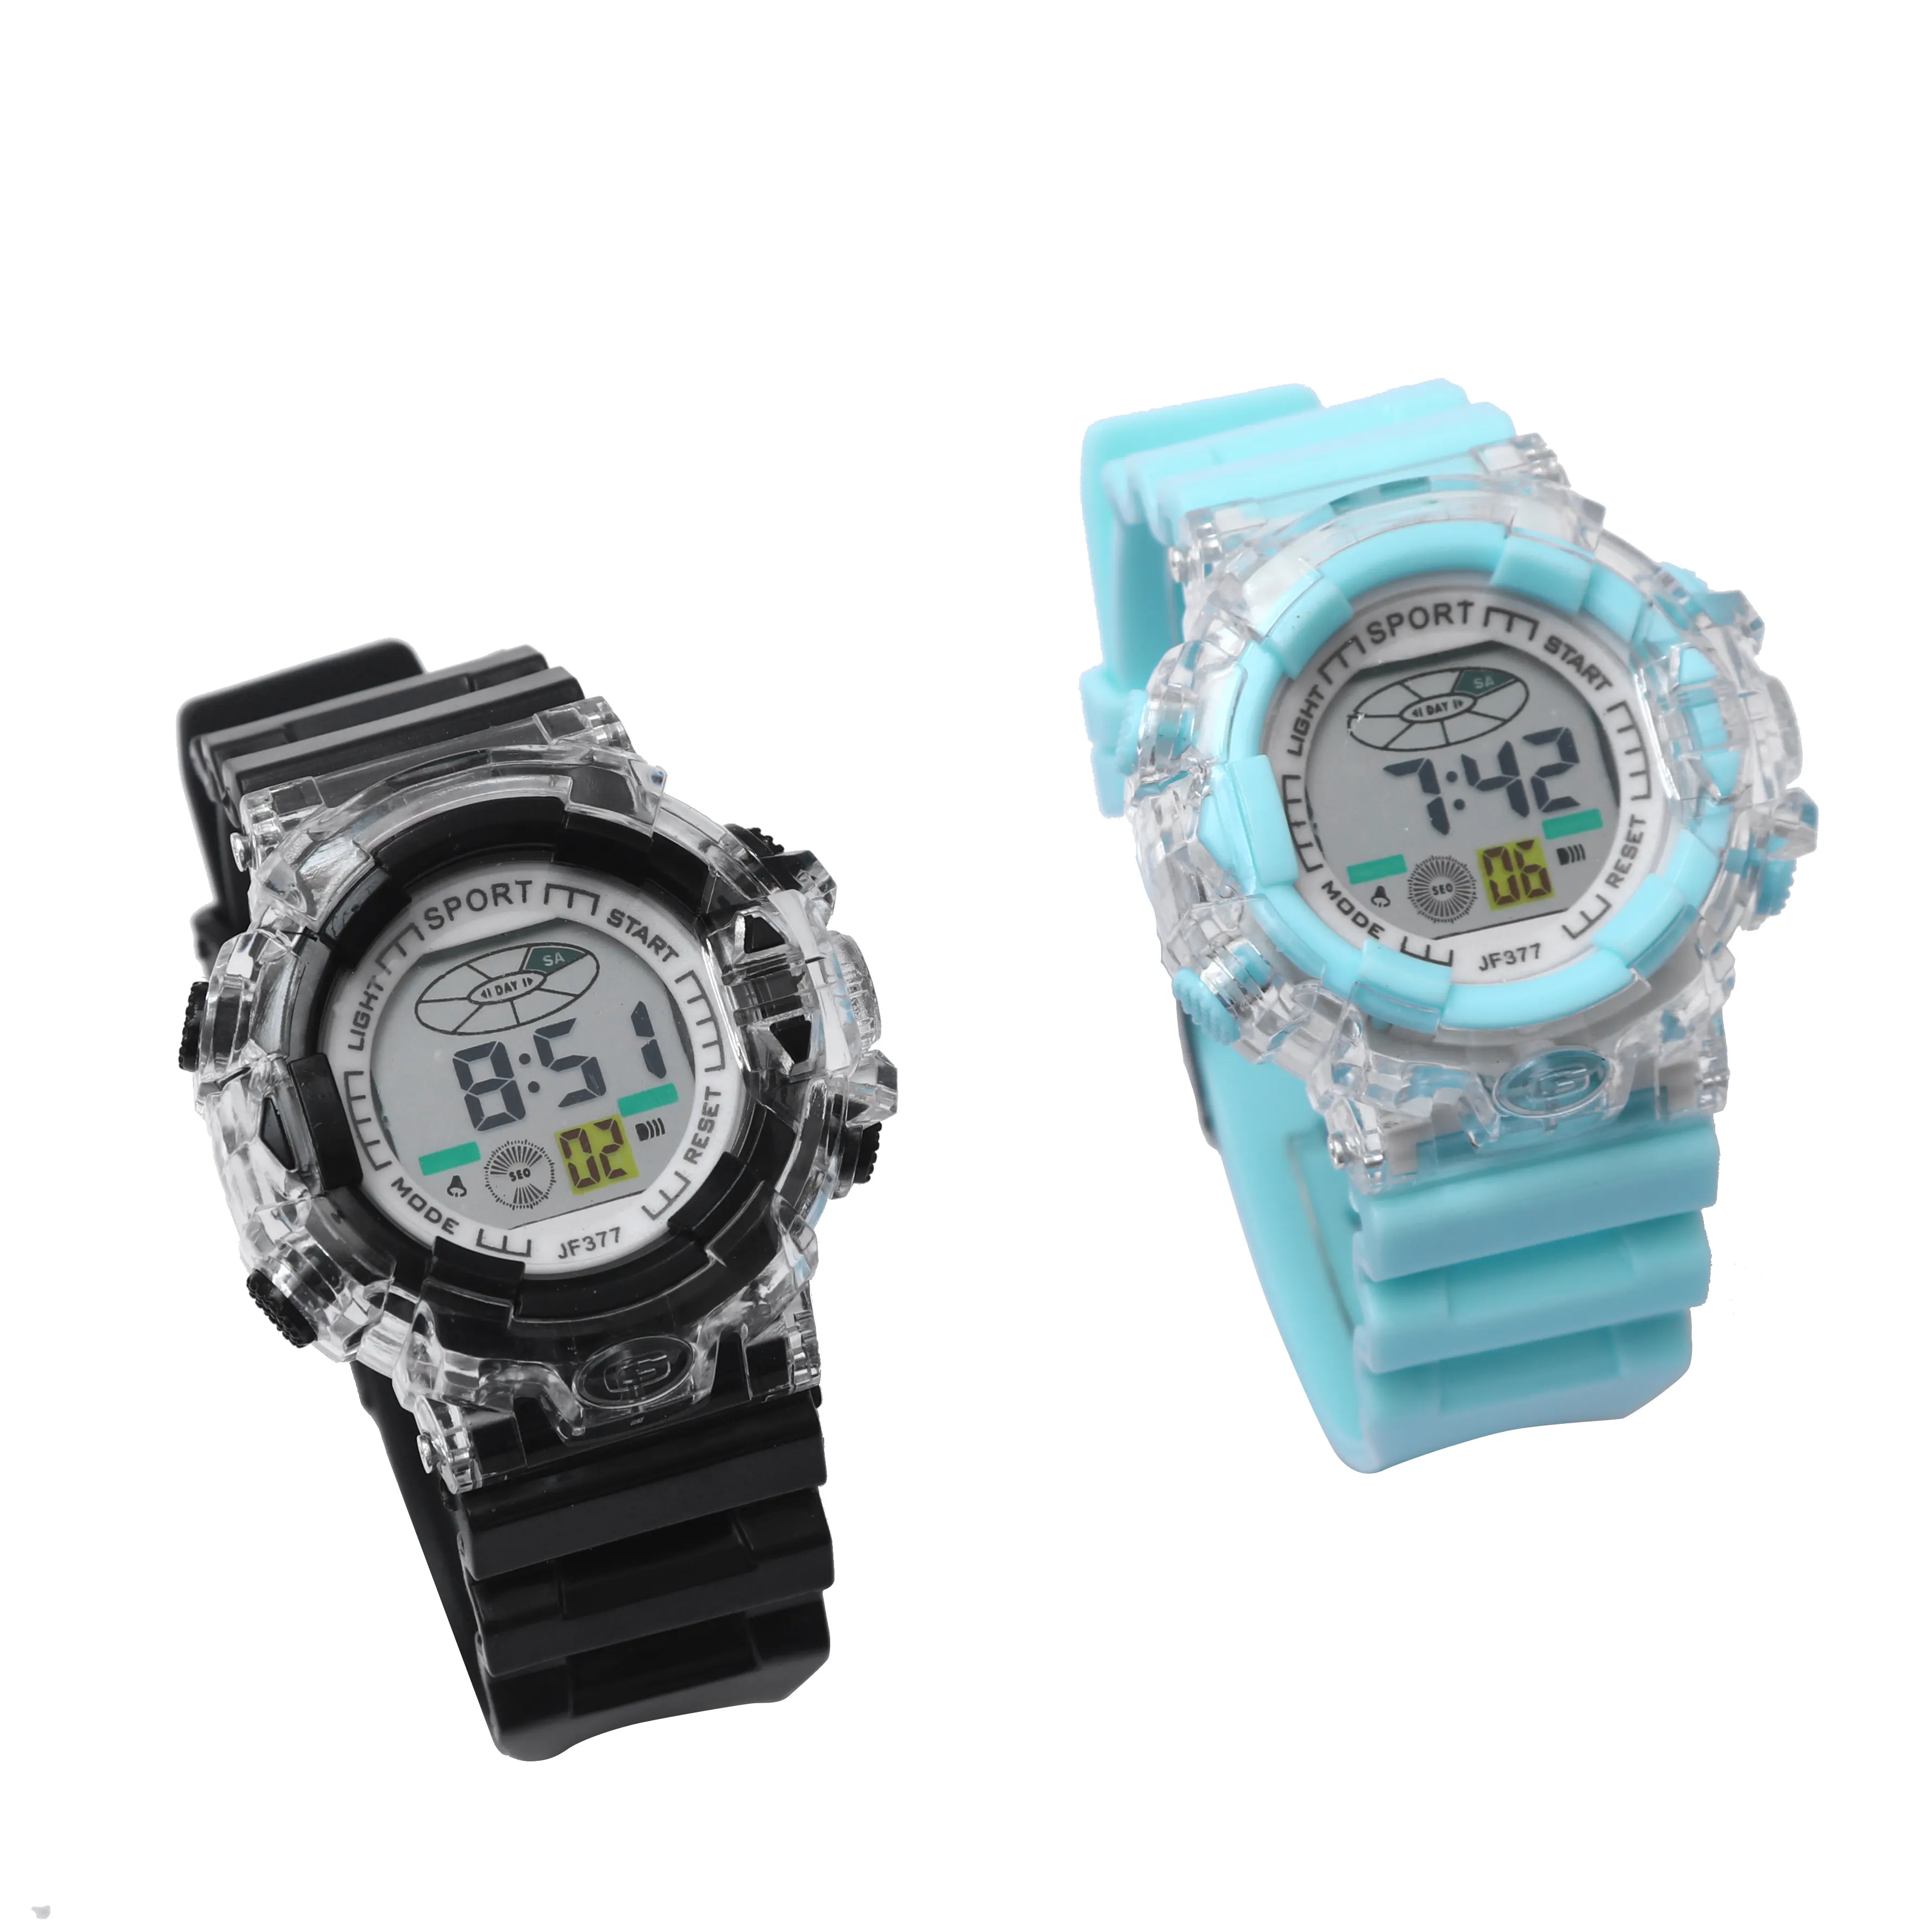 Jam tangan elektronik pria, arloji olahraga Digital dengan tanggal grosir, jam tangan untuk pria, grosir lainnya, transparan